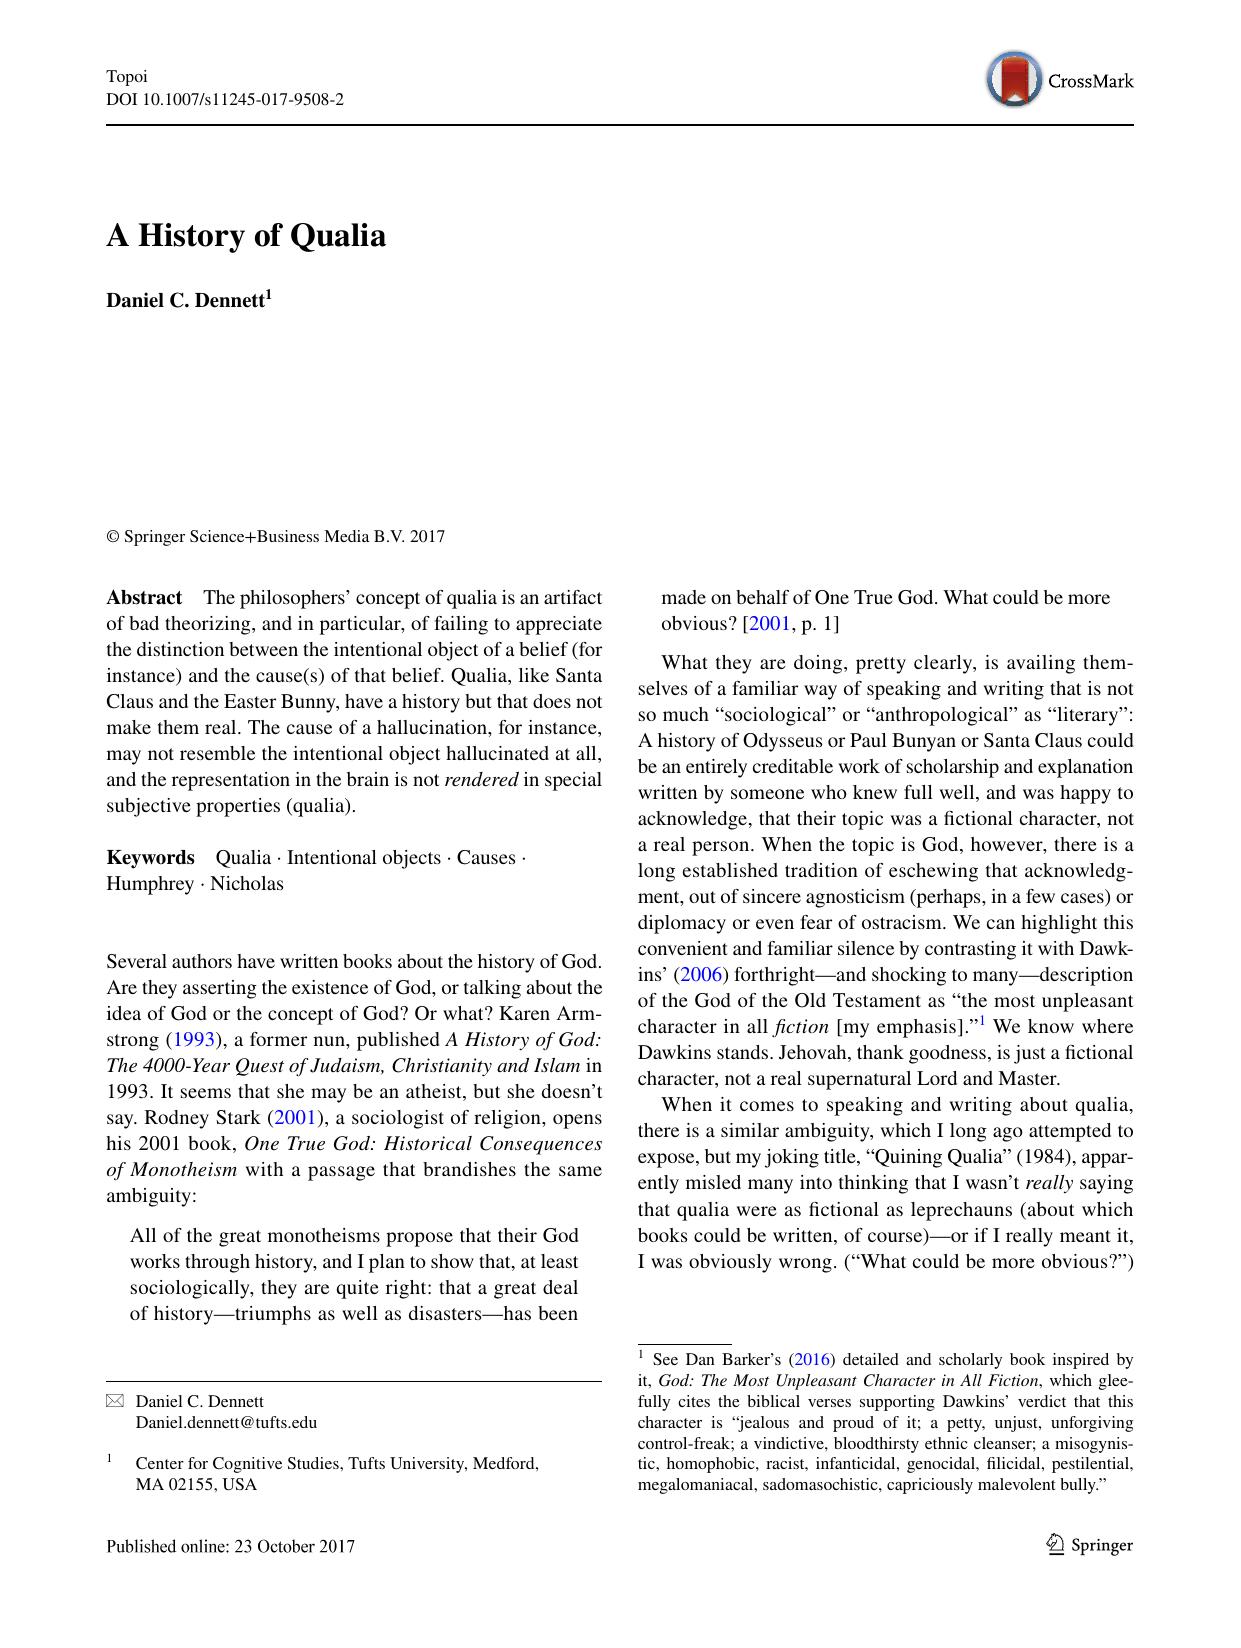 A History of Qualia by Daniel C. Dennett